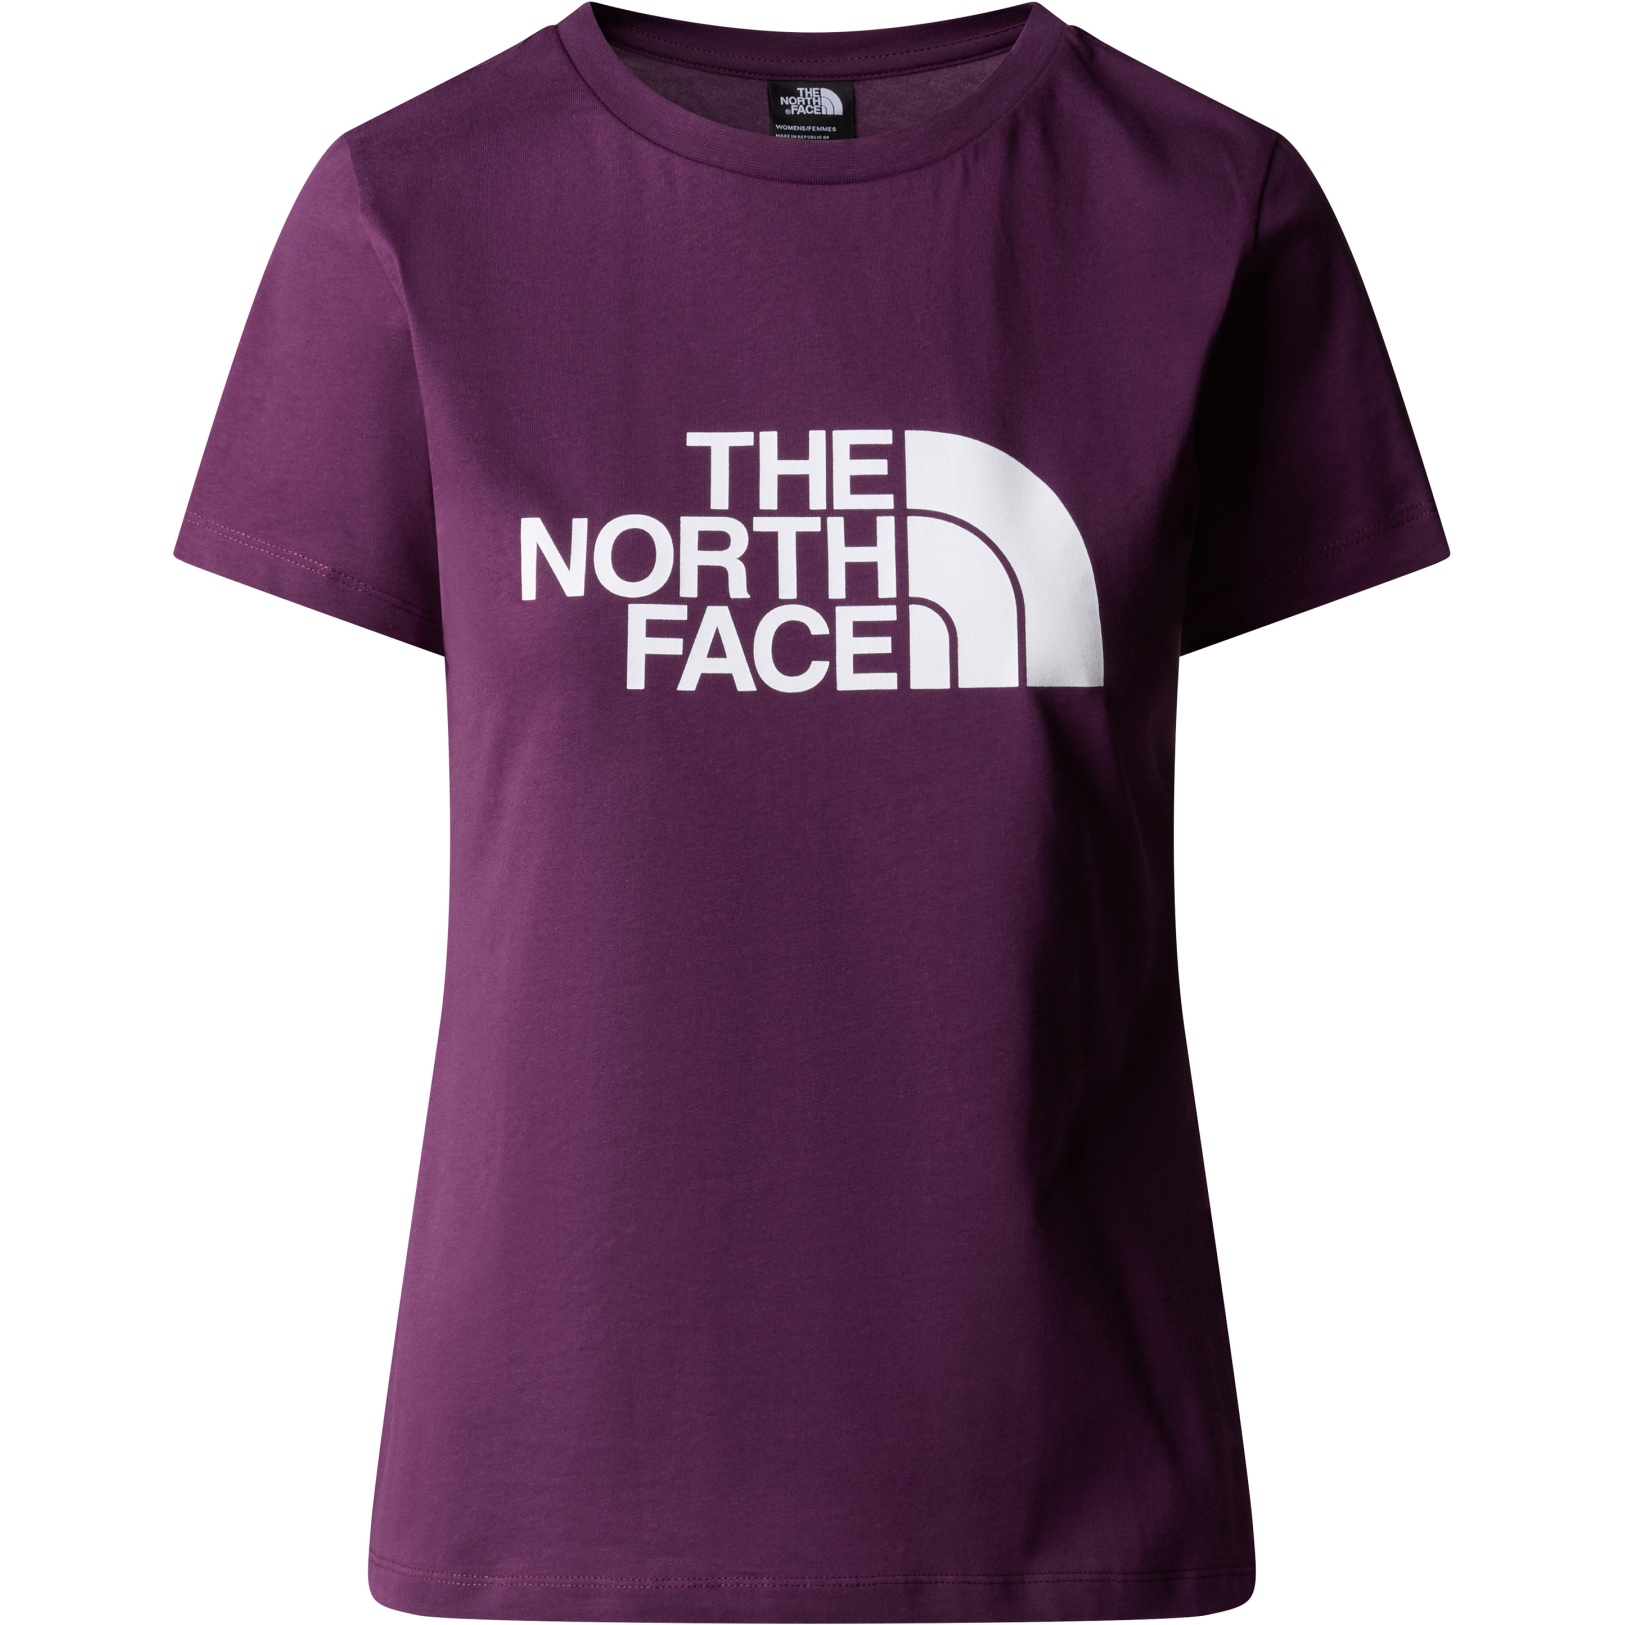 Produktbild von The North Face Easy T-Shirt Damen - Black Currant Purple